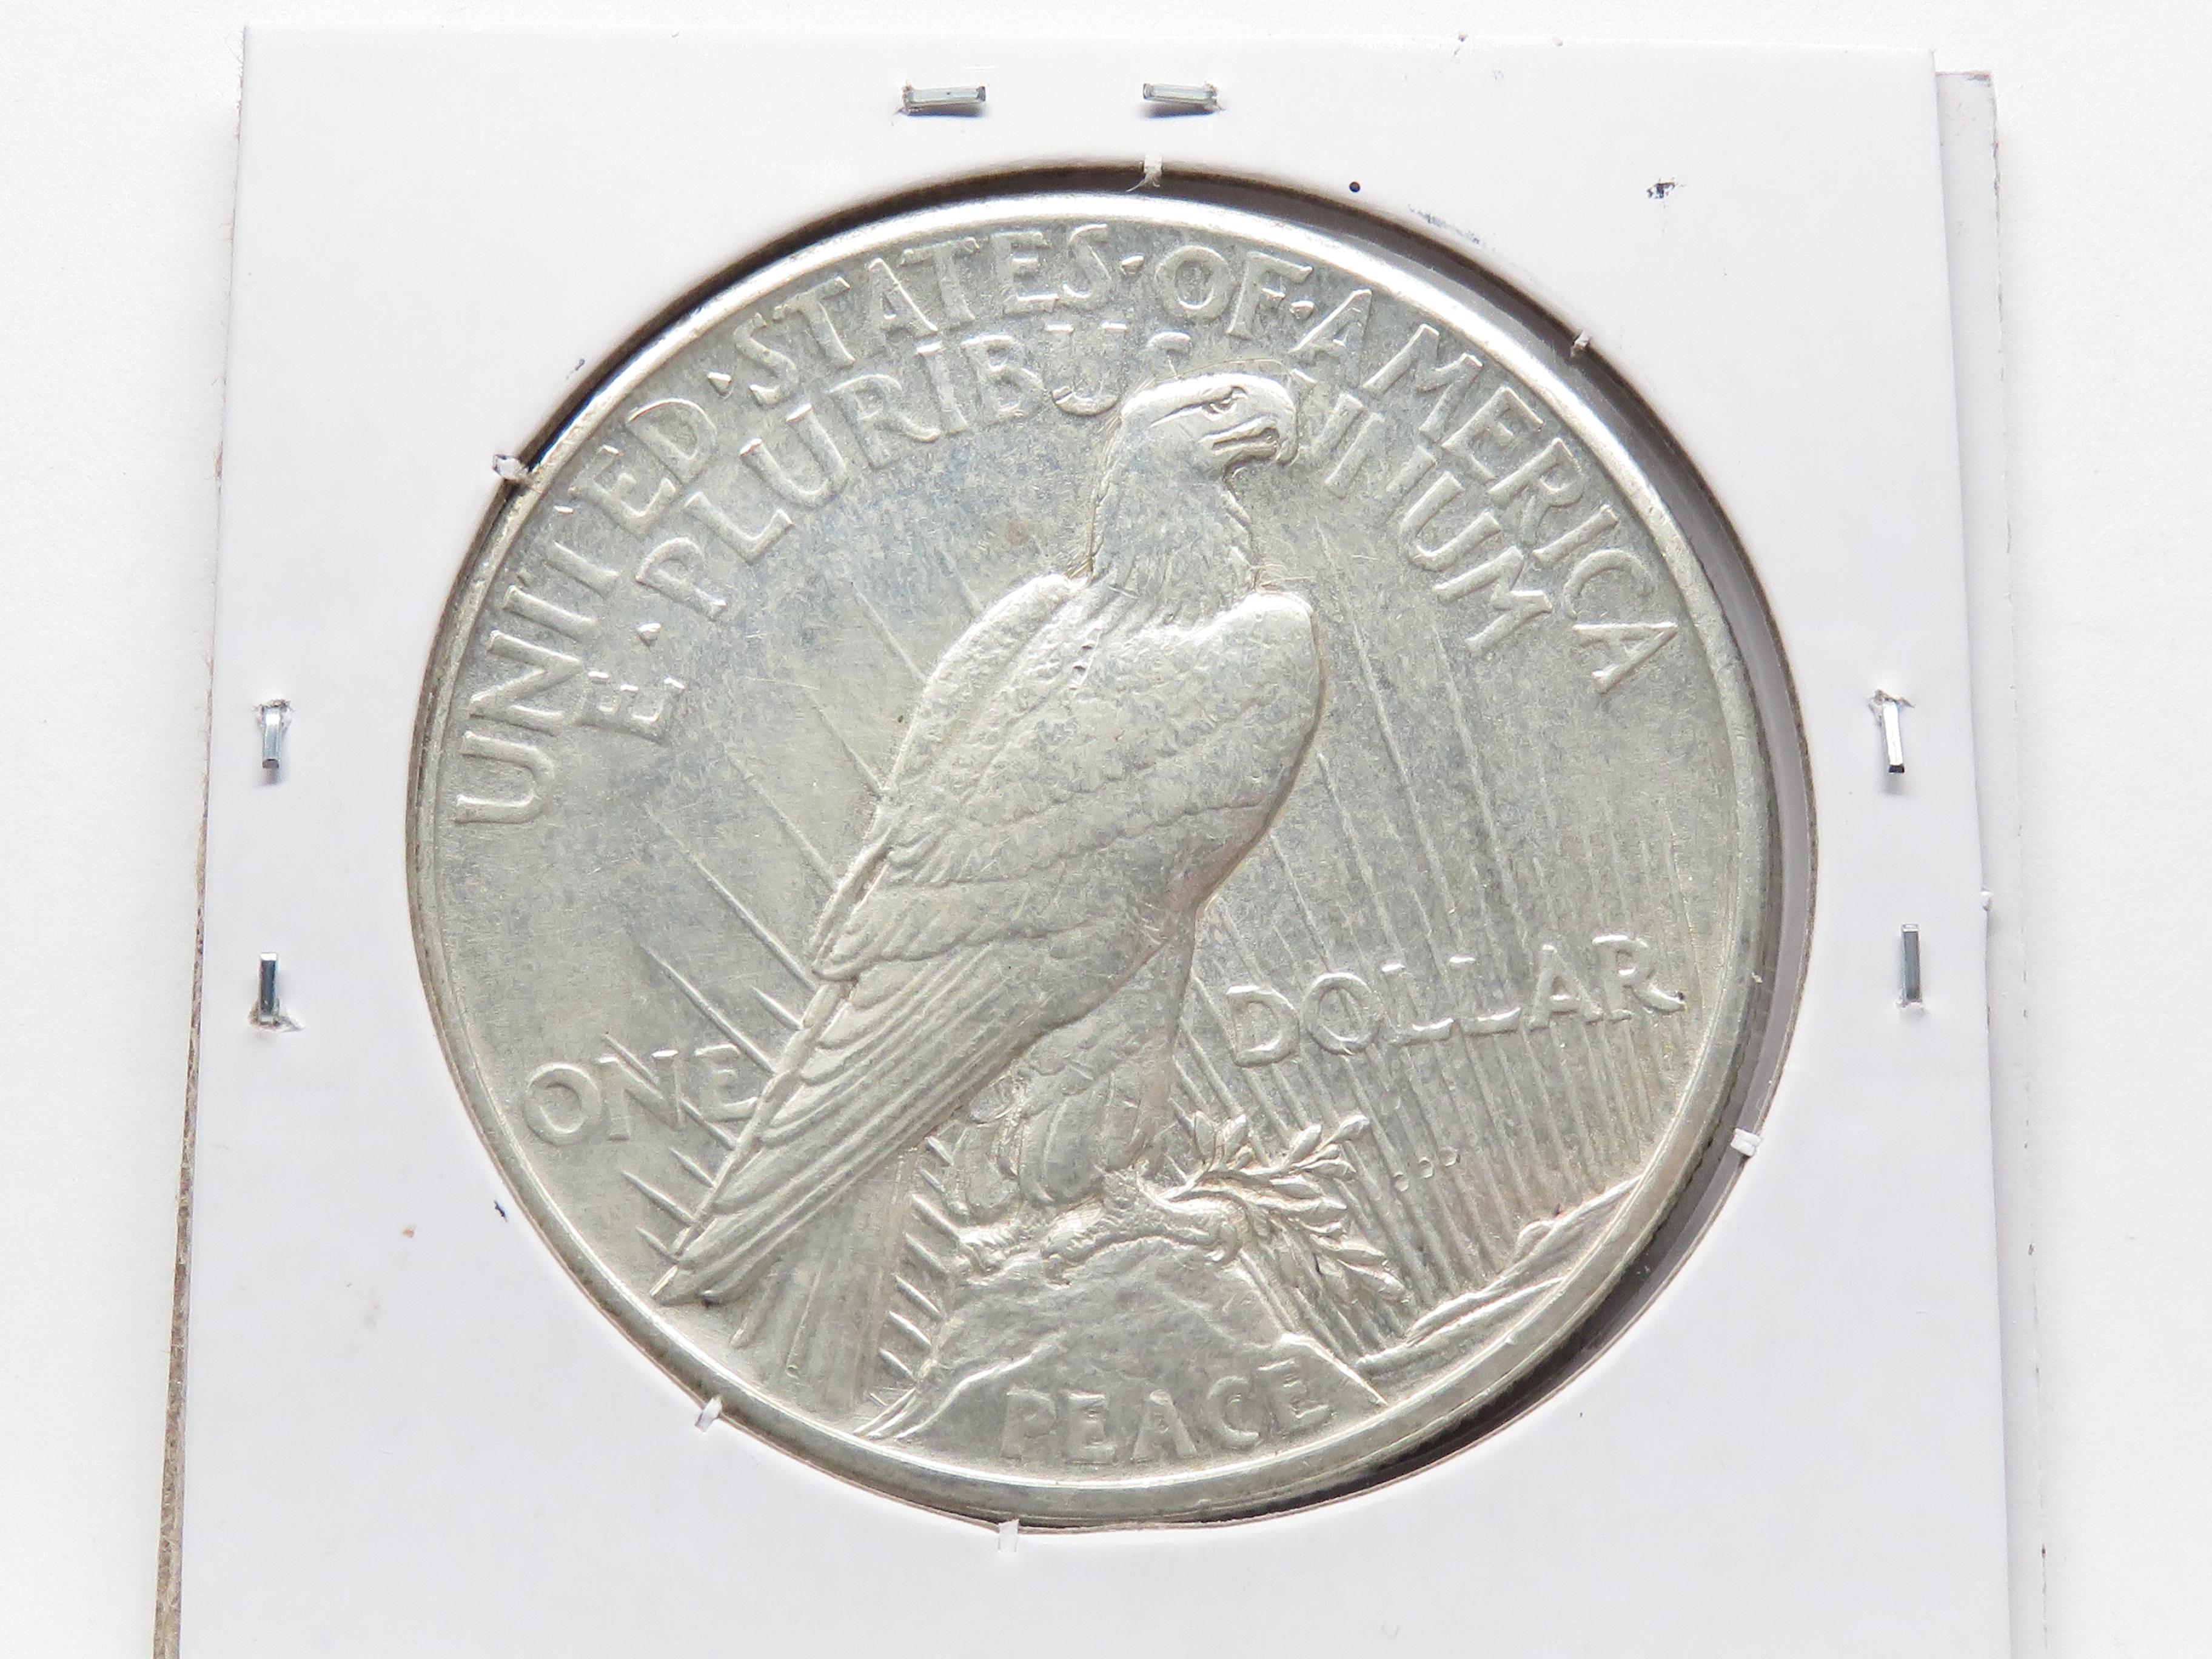 Peace $ 1921 AU, Semi-Key date